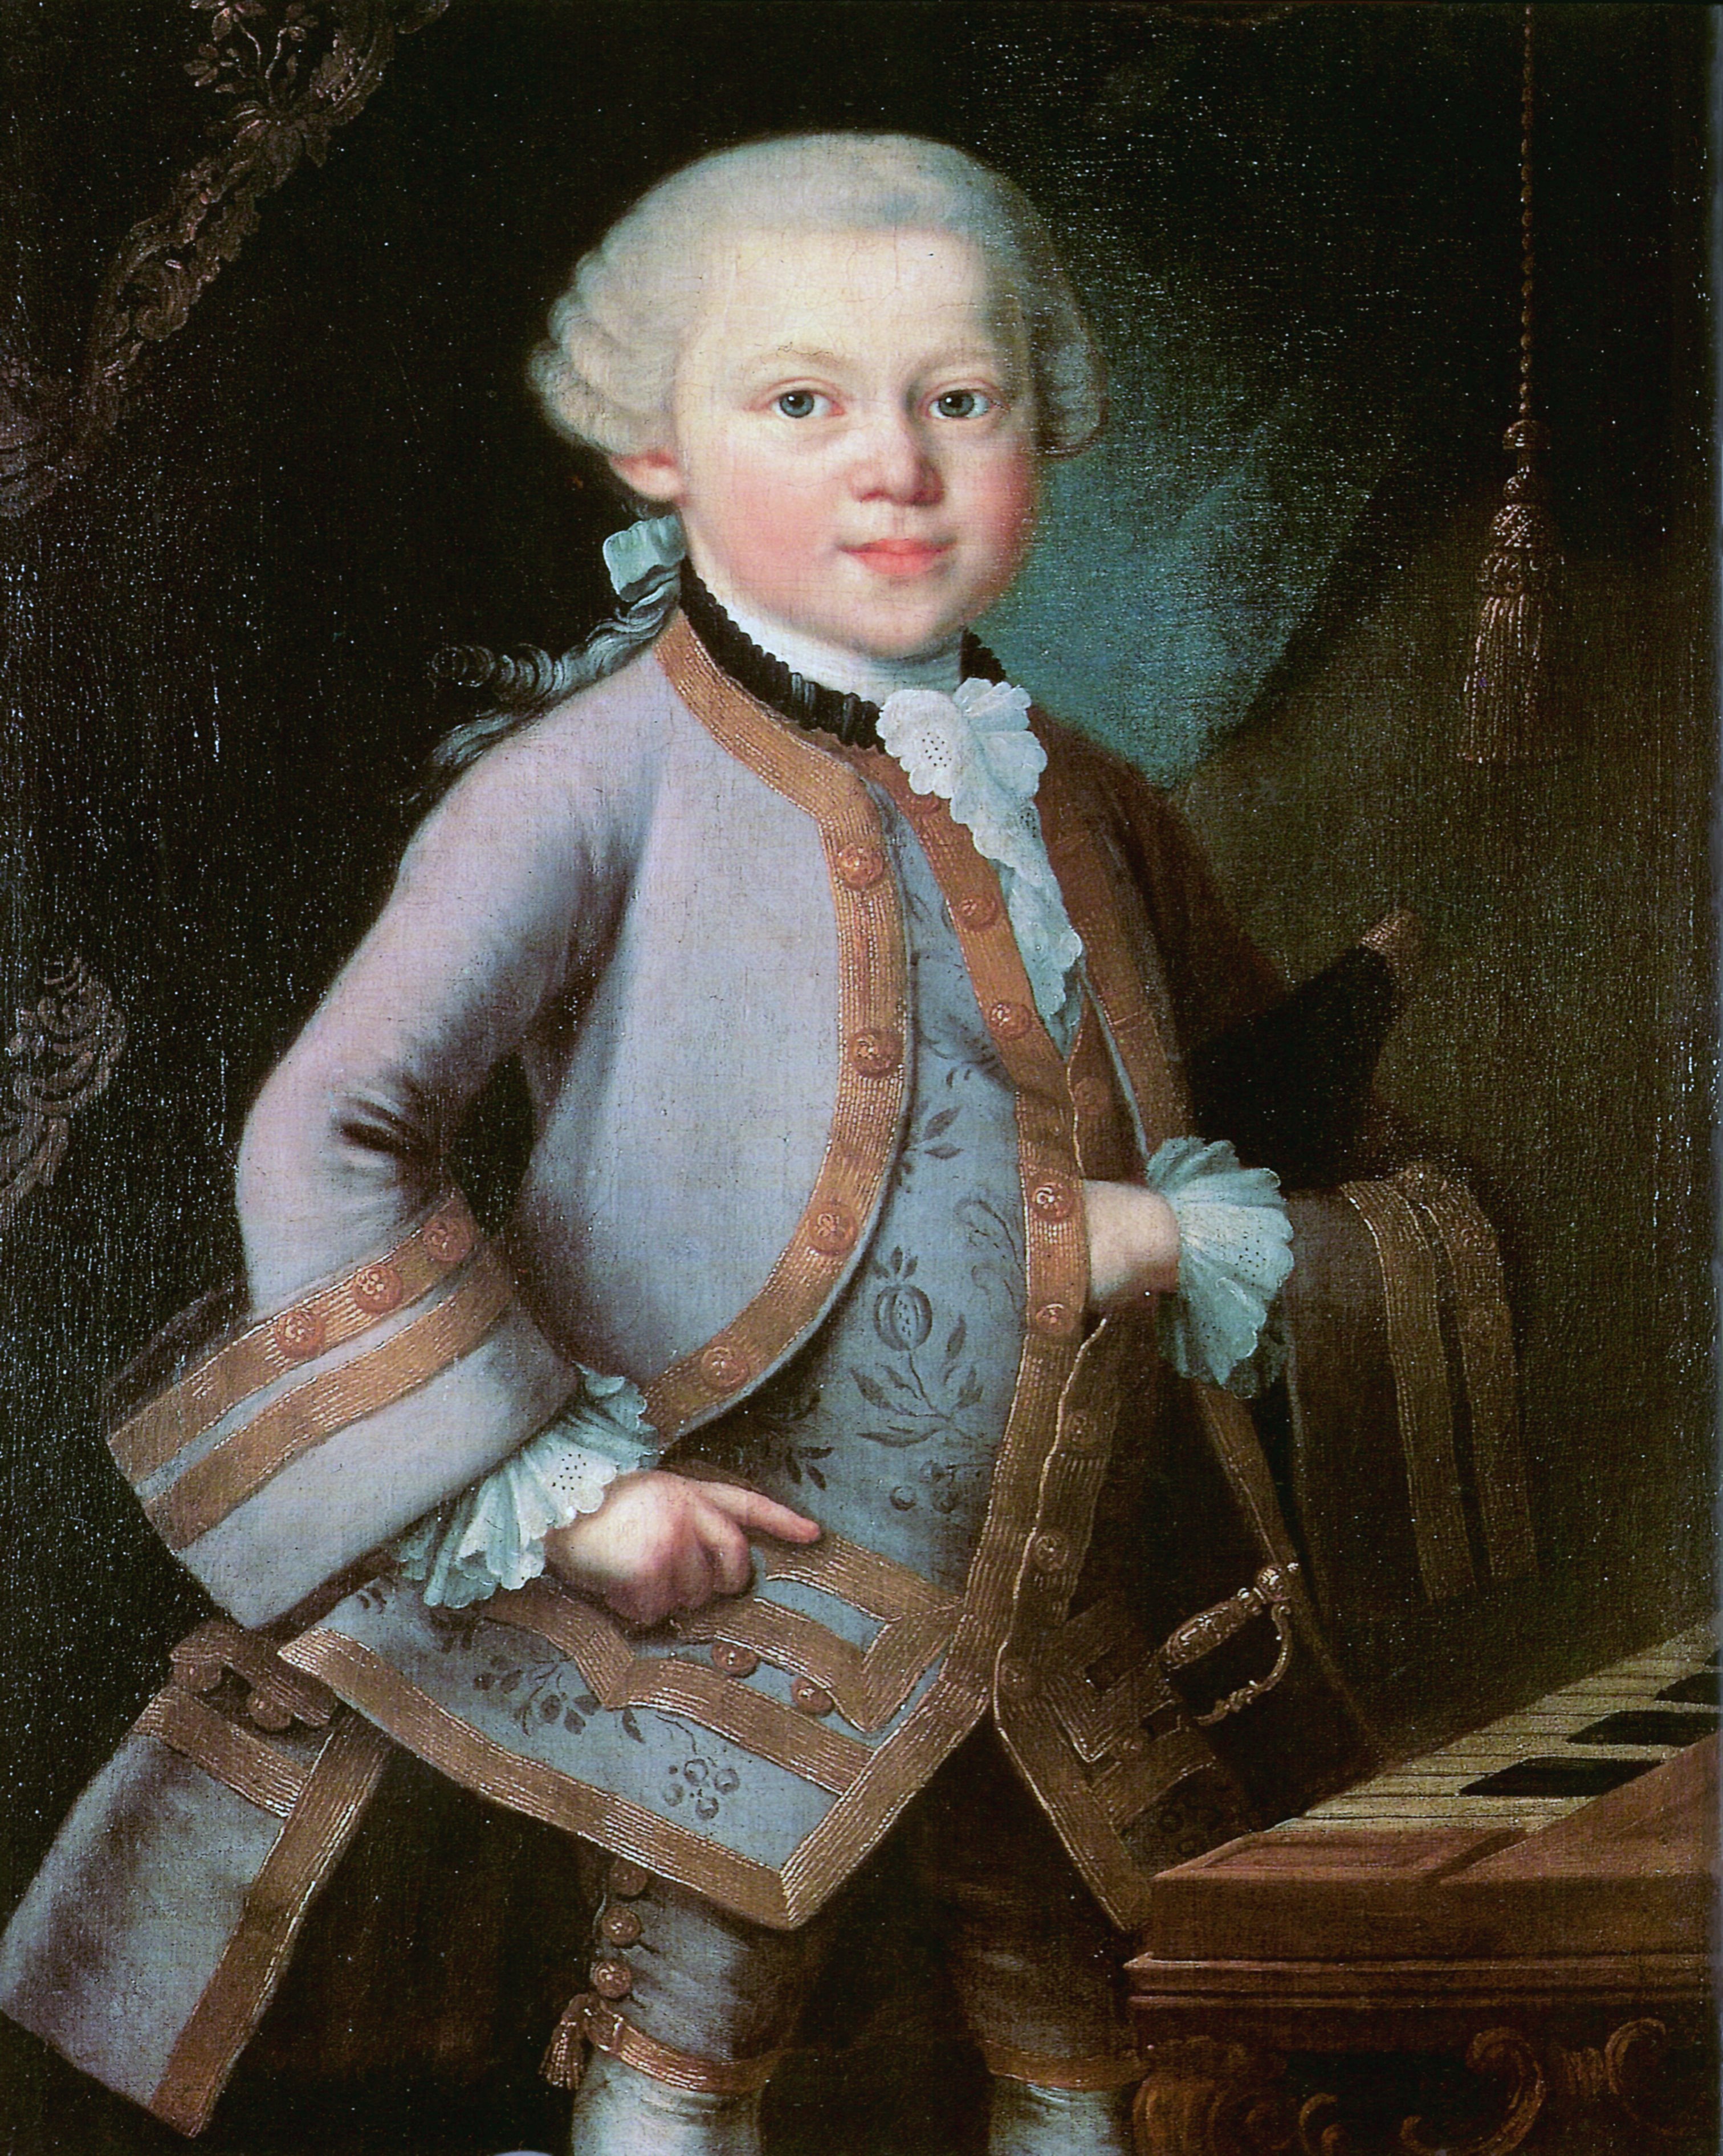 A meglepően nagymamásan festő kis Mozart (forrás: wikipedia)